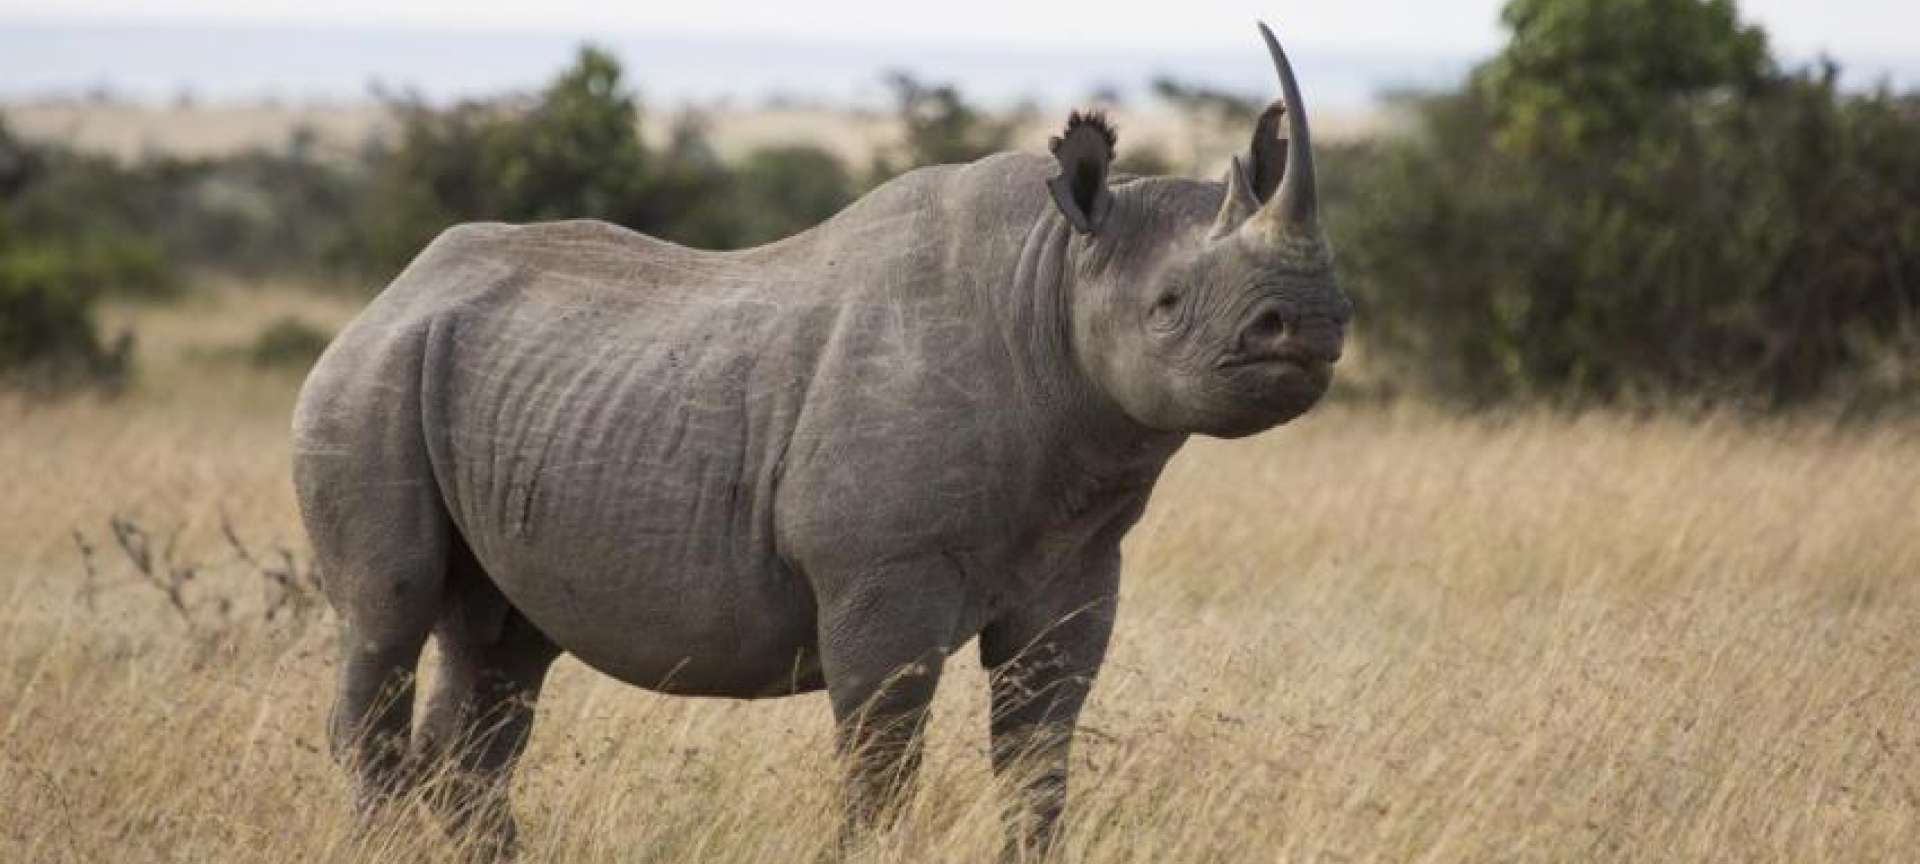 Rhino_Kenya_Wildlife